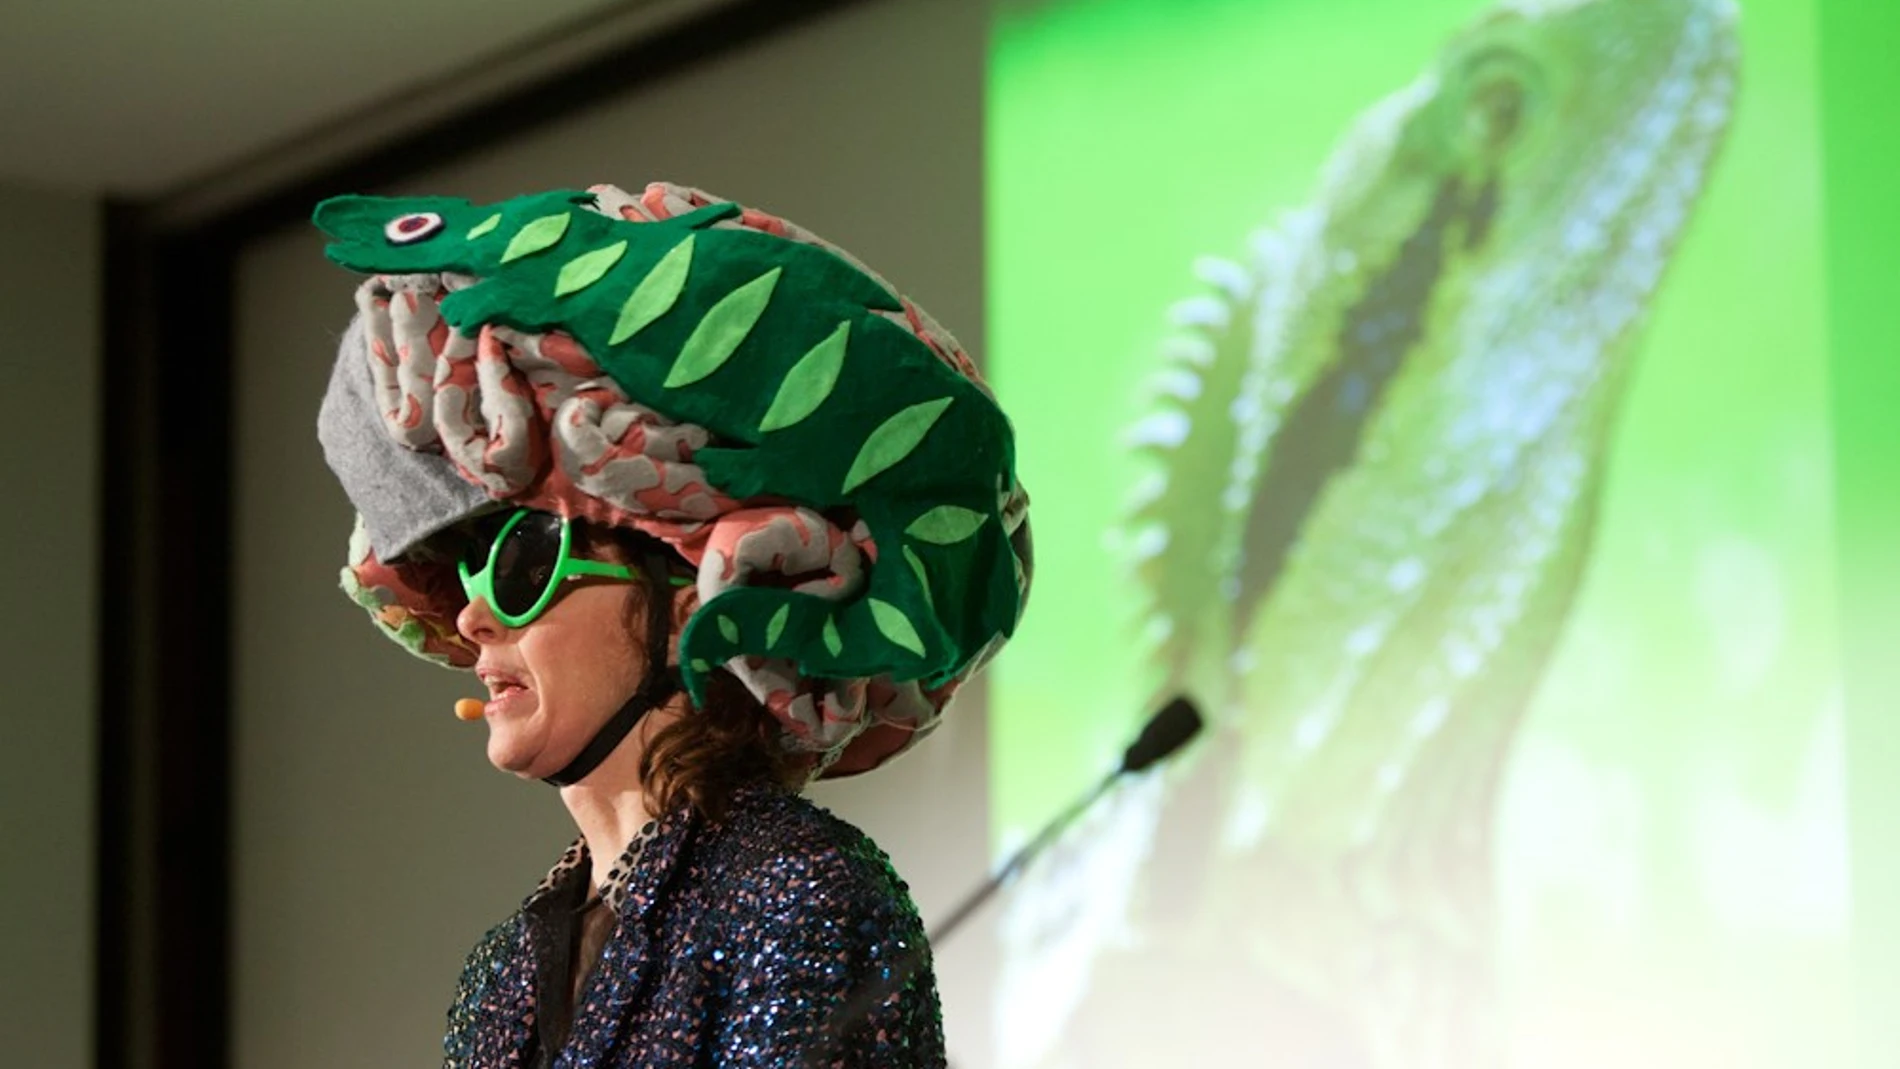 Suzy Polucci hablando sobre el cerebro reptiliano en una Charla TED